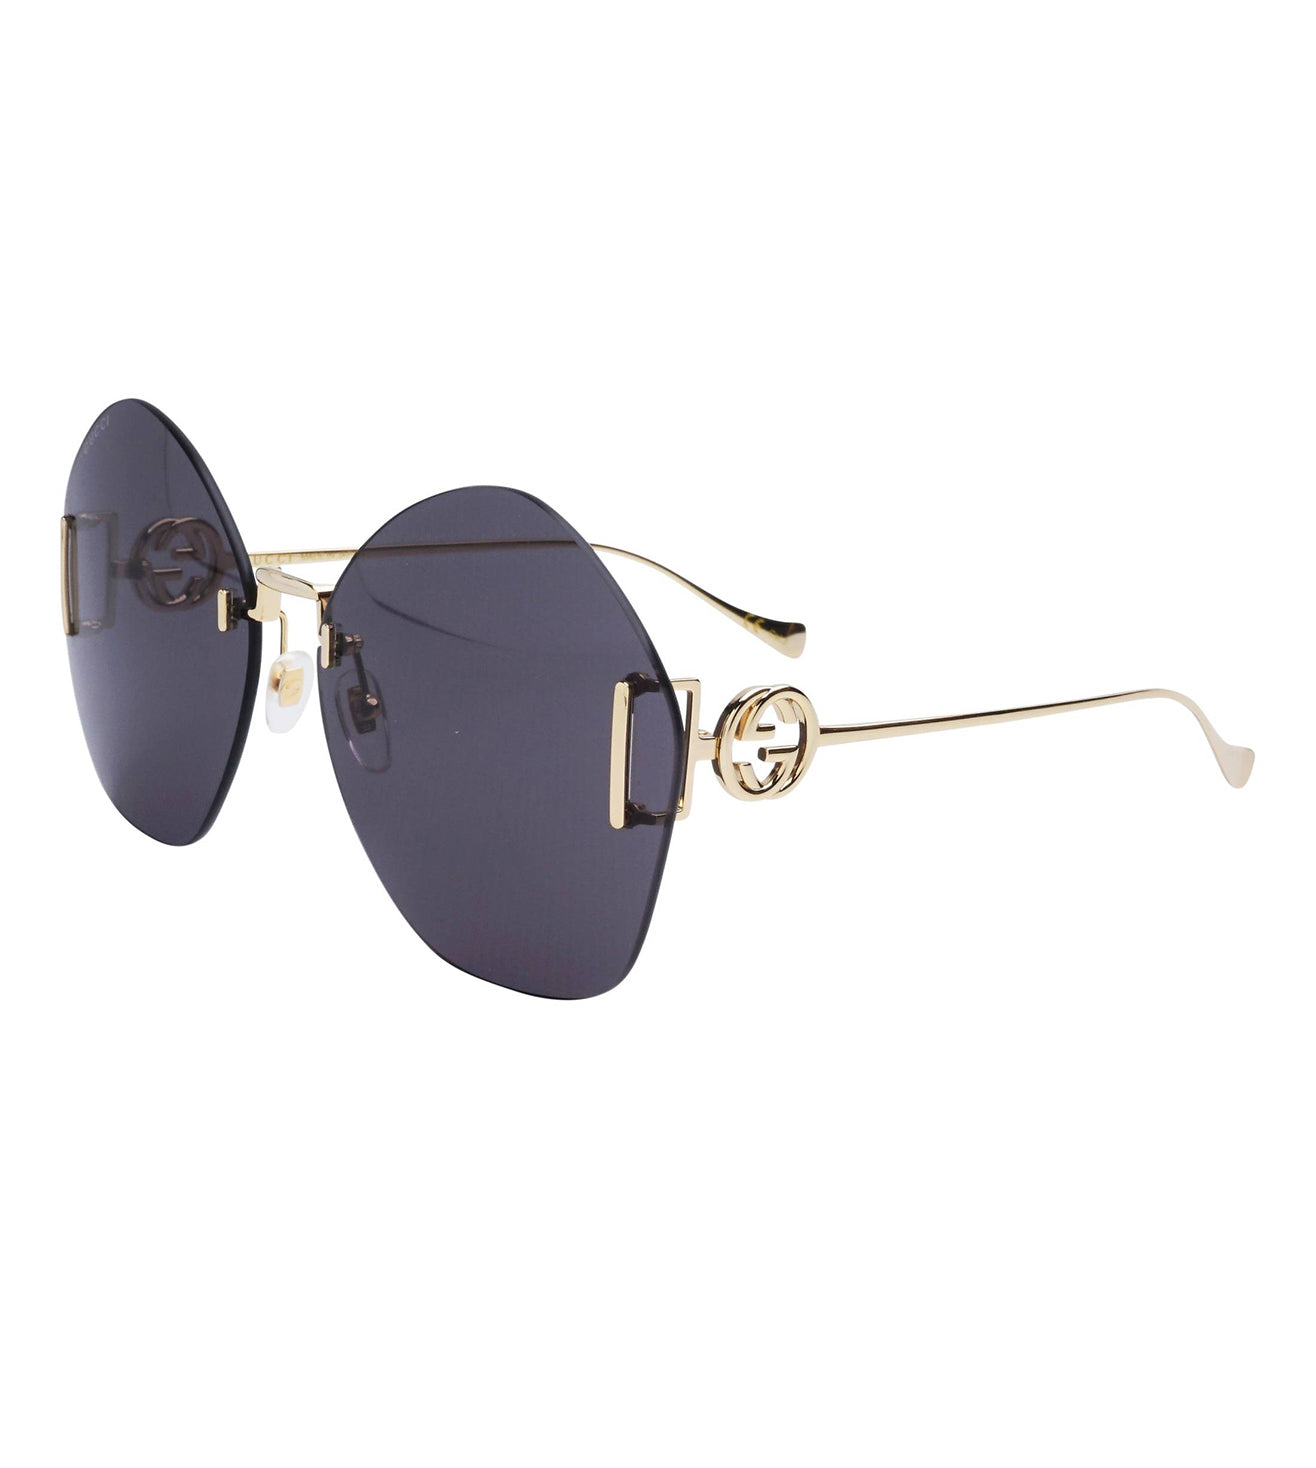 Gucci Women's Black Round Sunglasses